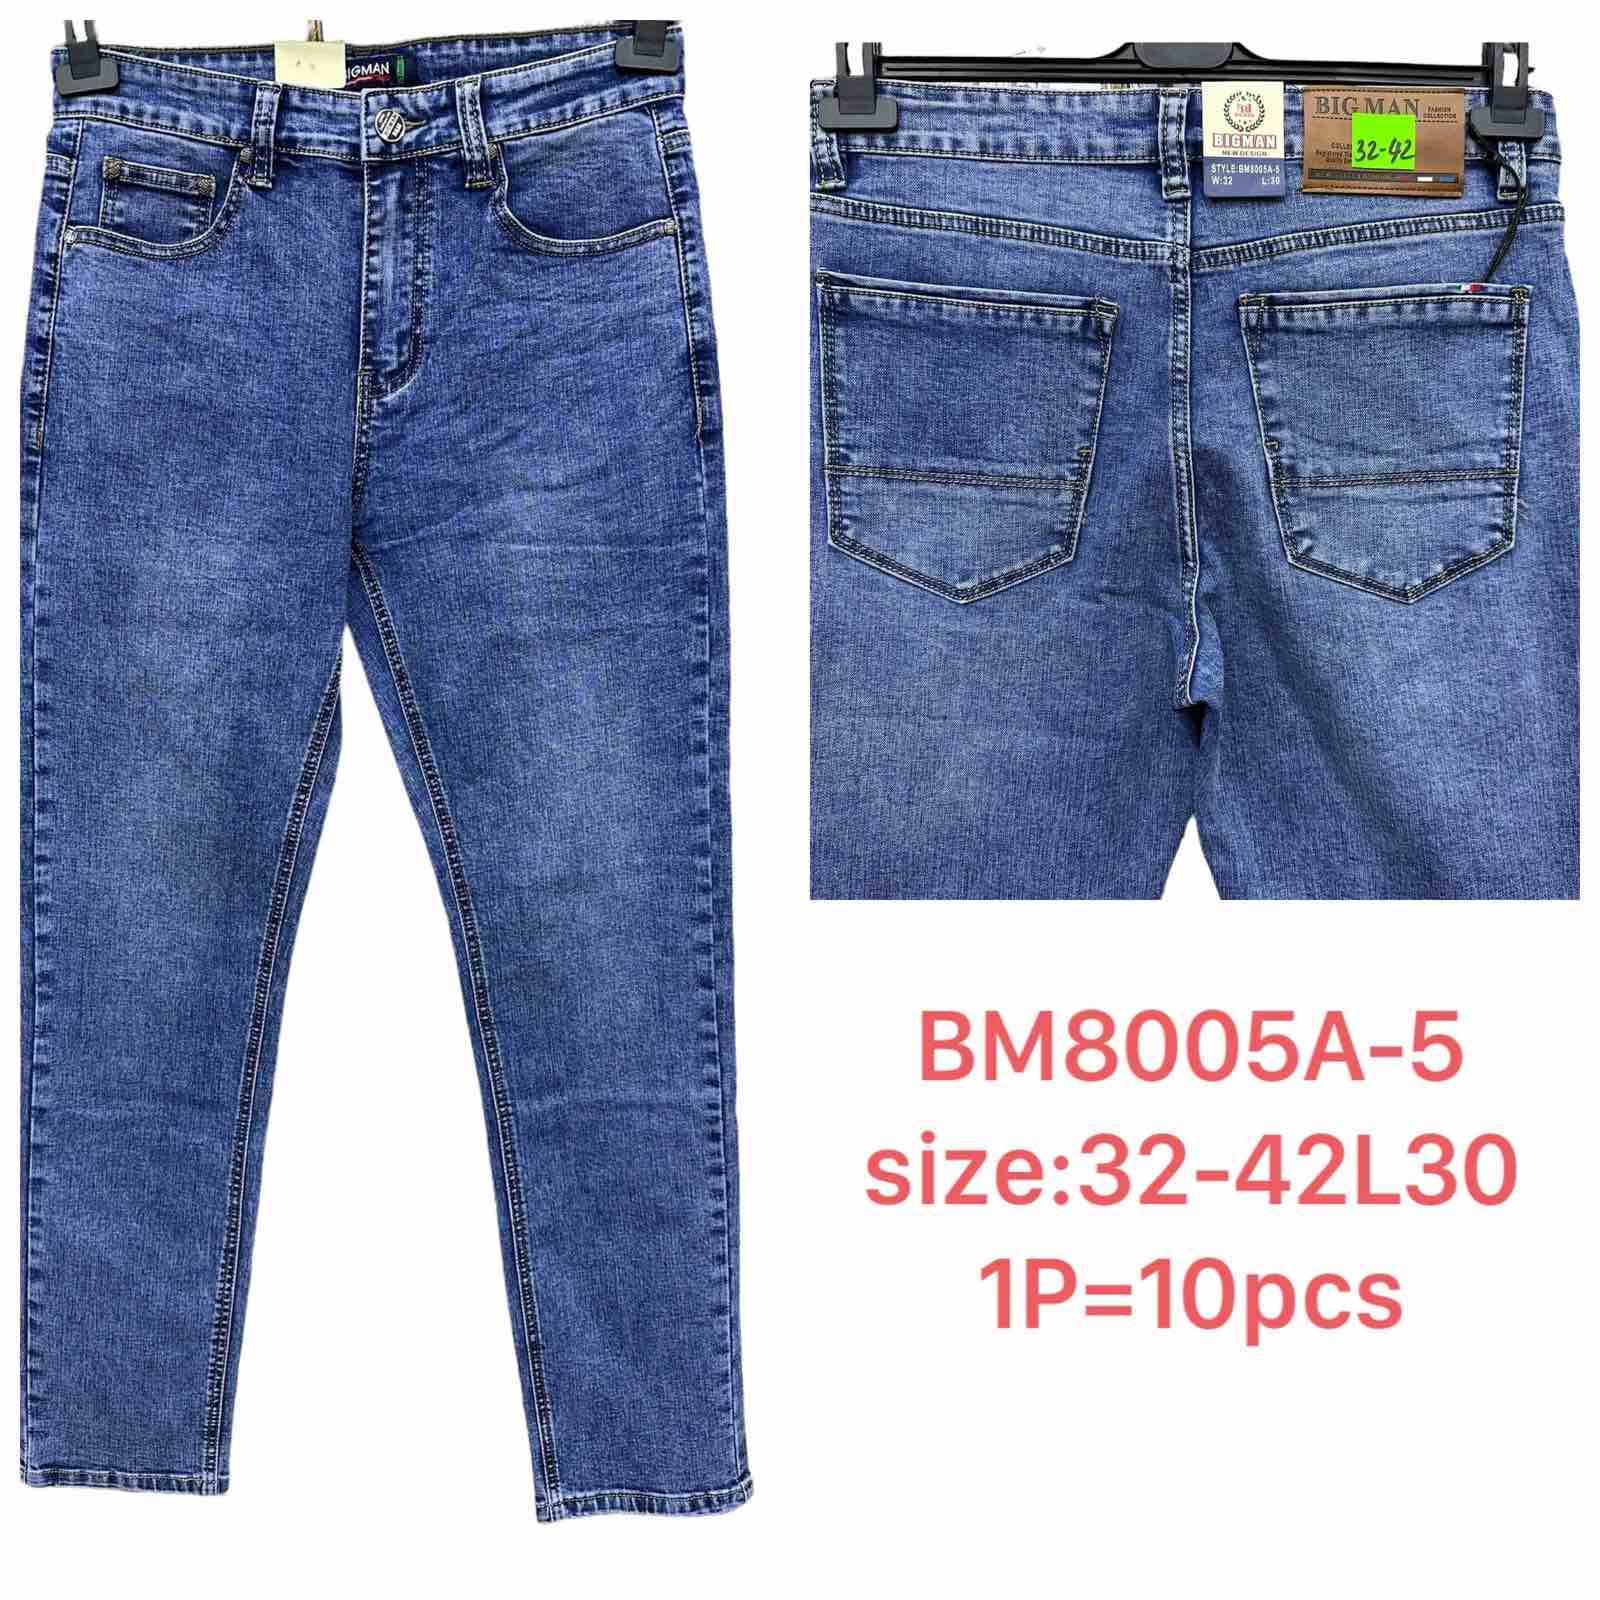 Spodnie meskie jeans  Roz 32-42 L30 Paczka 10szt